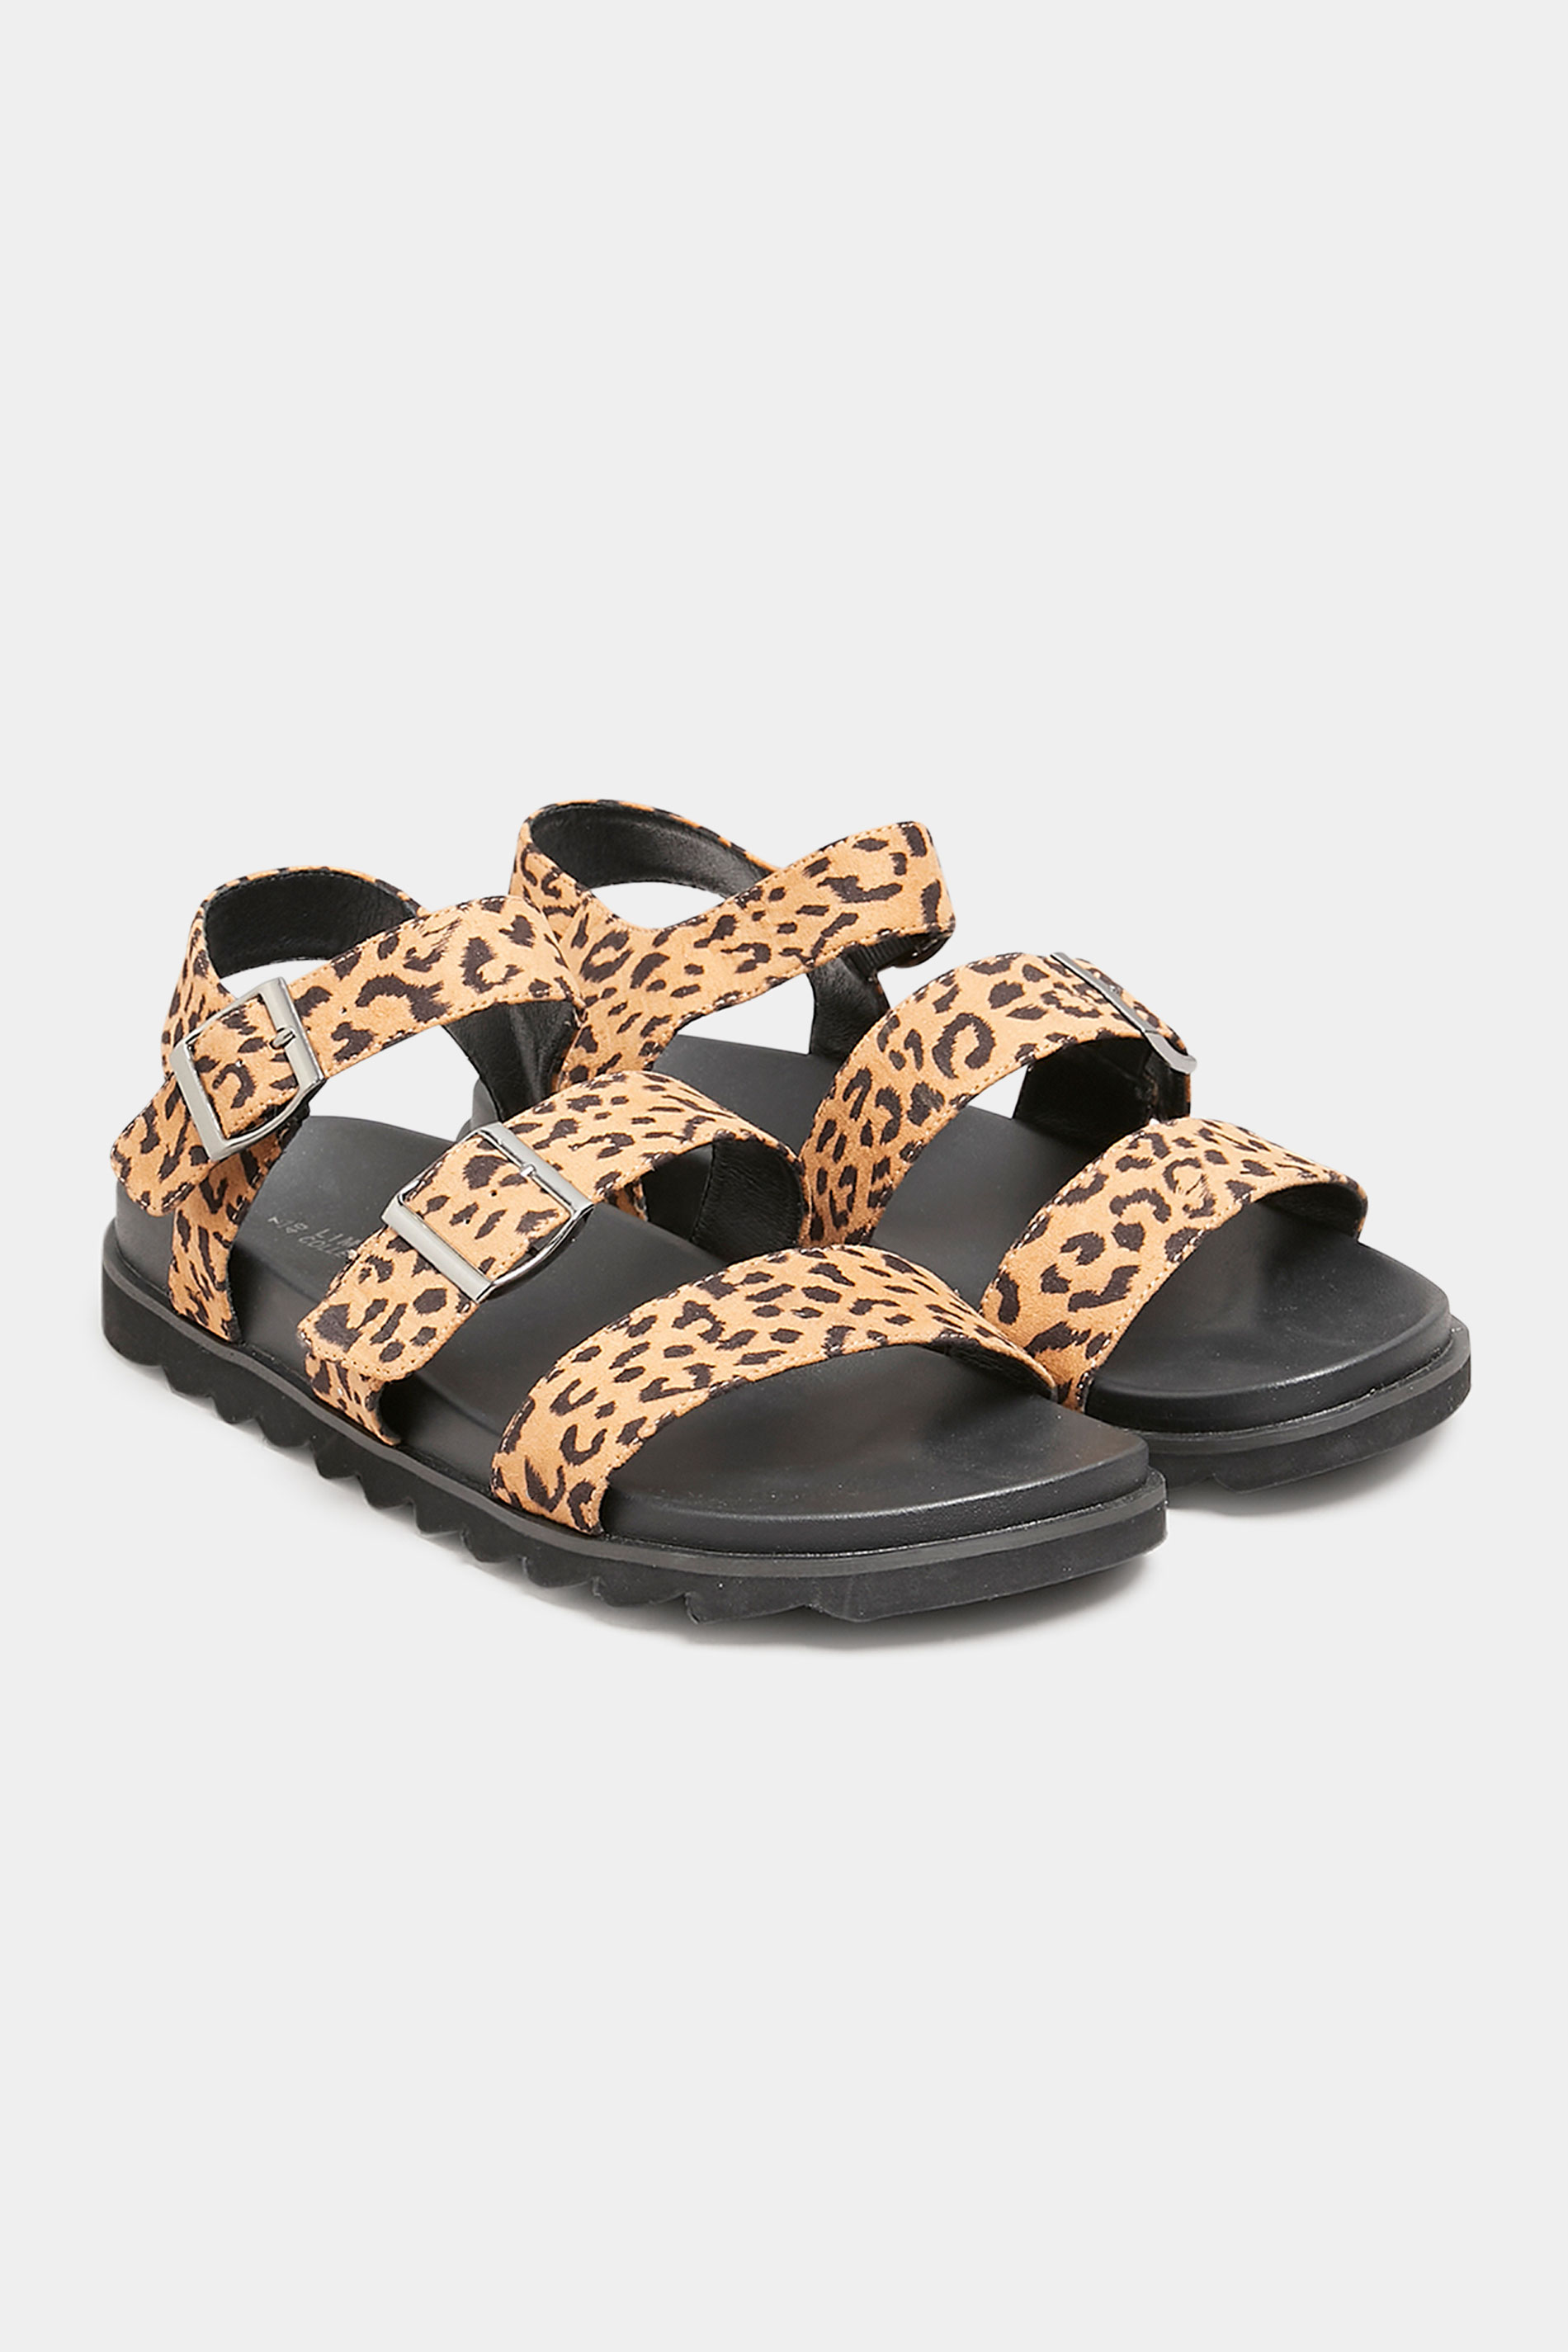 Black Leopard Print Buckle Sandals In Extra Wide EEE Fit_AR.jpg